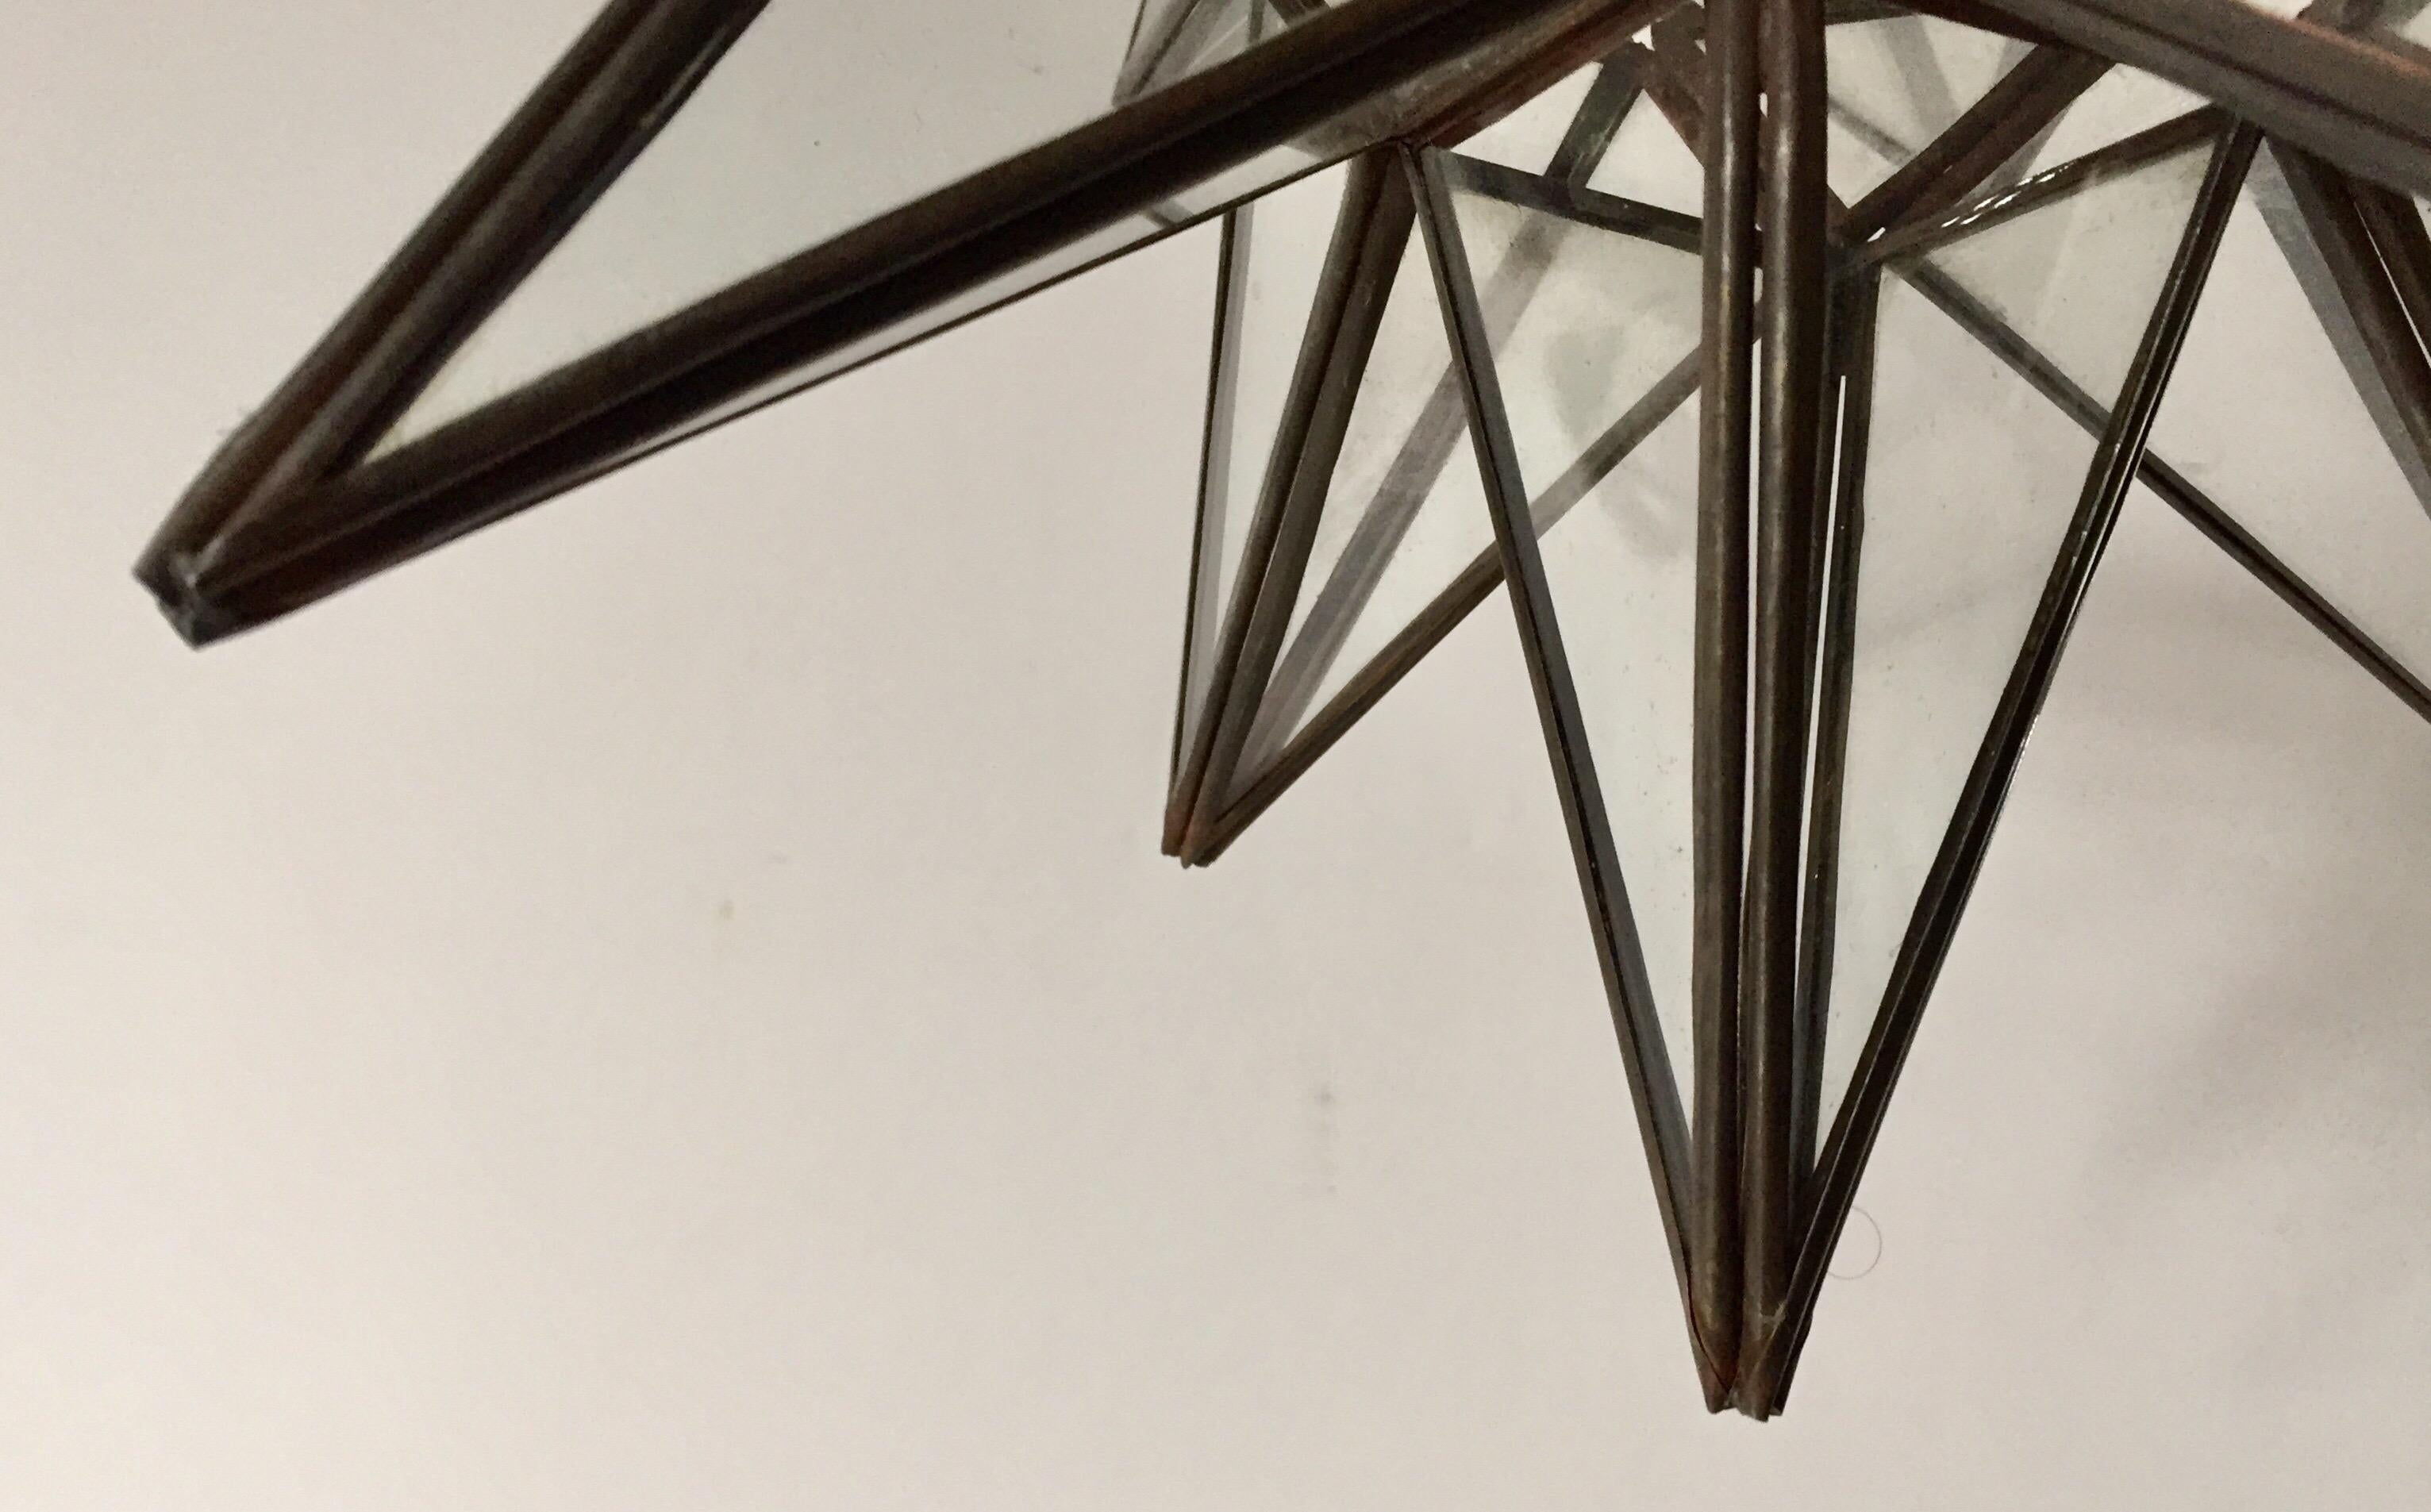 Marokkanische Laterne aus klarem Glas und Metall in Form eines mährischen Sterns Ein schöner geometrischer Sternanhänger aus Metall und Glas im Vintage-Stil. Facettenreiche große Sternlaterne mit Glasscheiben, die geometrische Formen ähnlich den